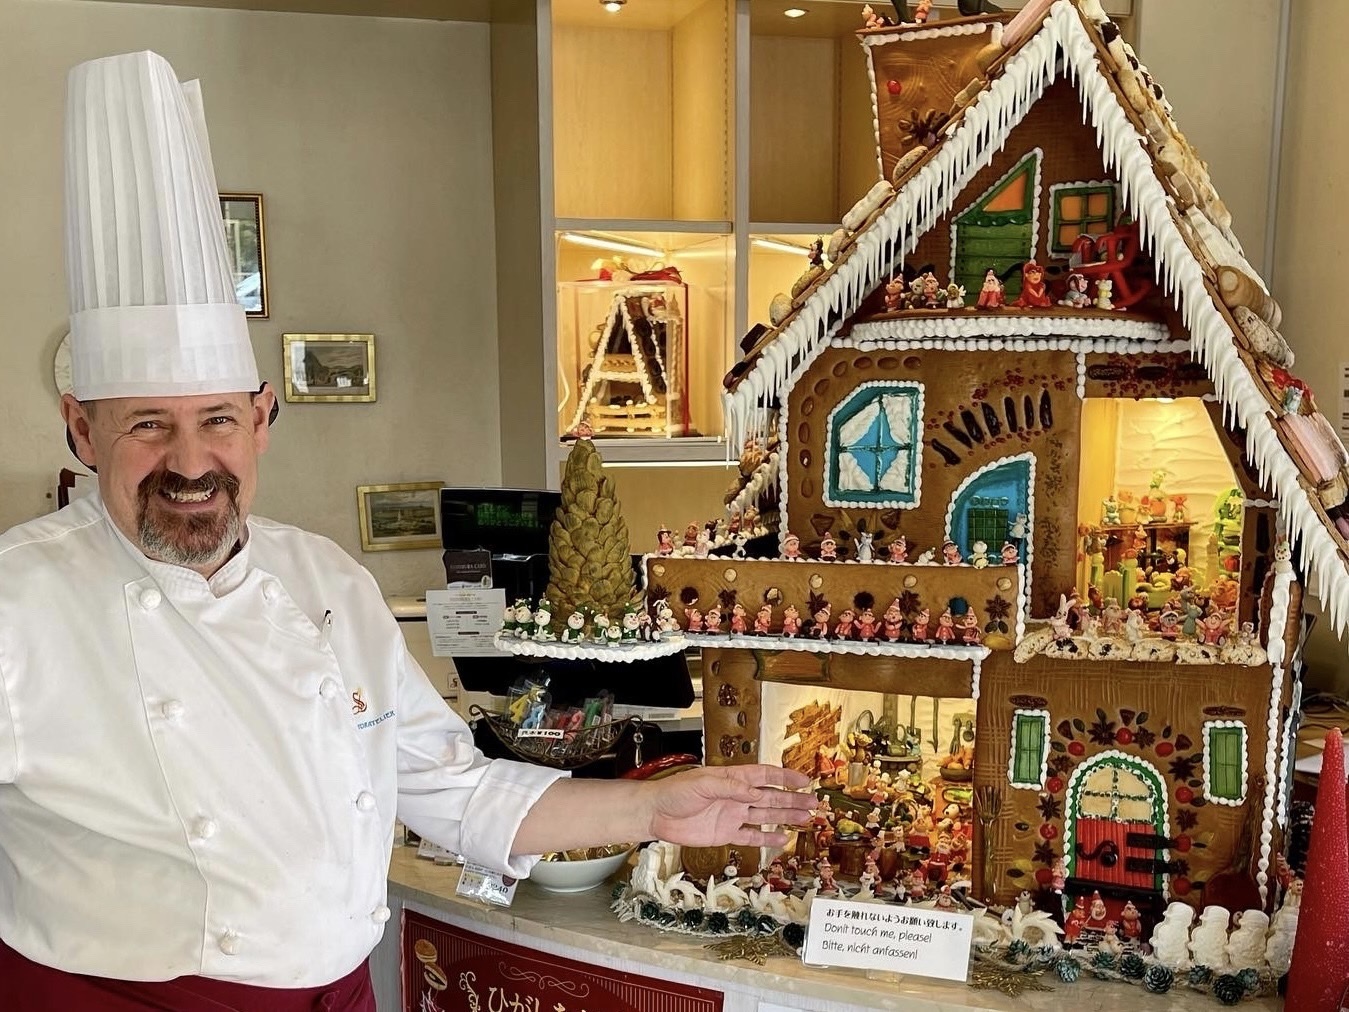 ウィーン菓子で作られた、丸ごと食べられるお菓子の家
「ヘキセンハウス」がクリスマス限定販売開始